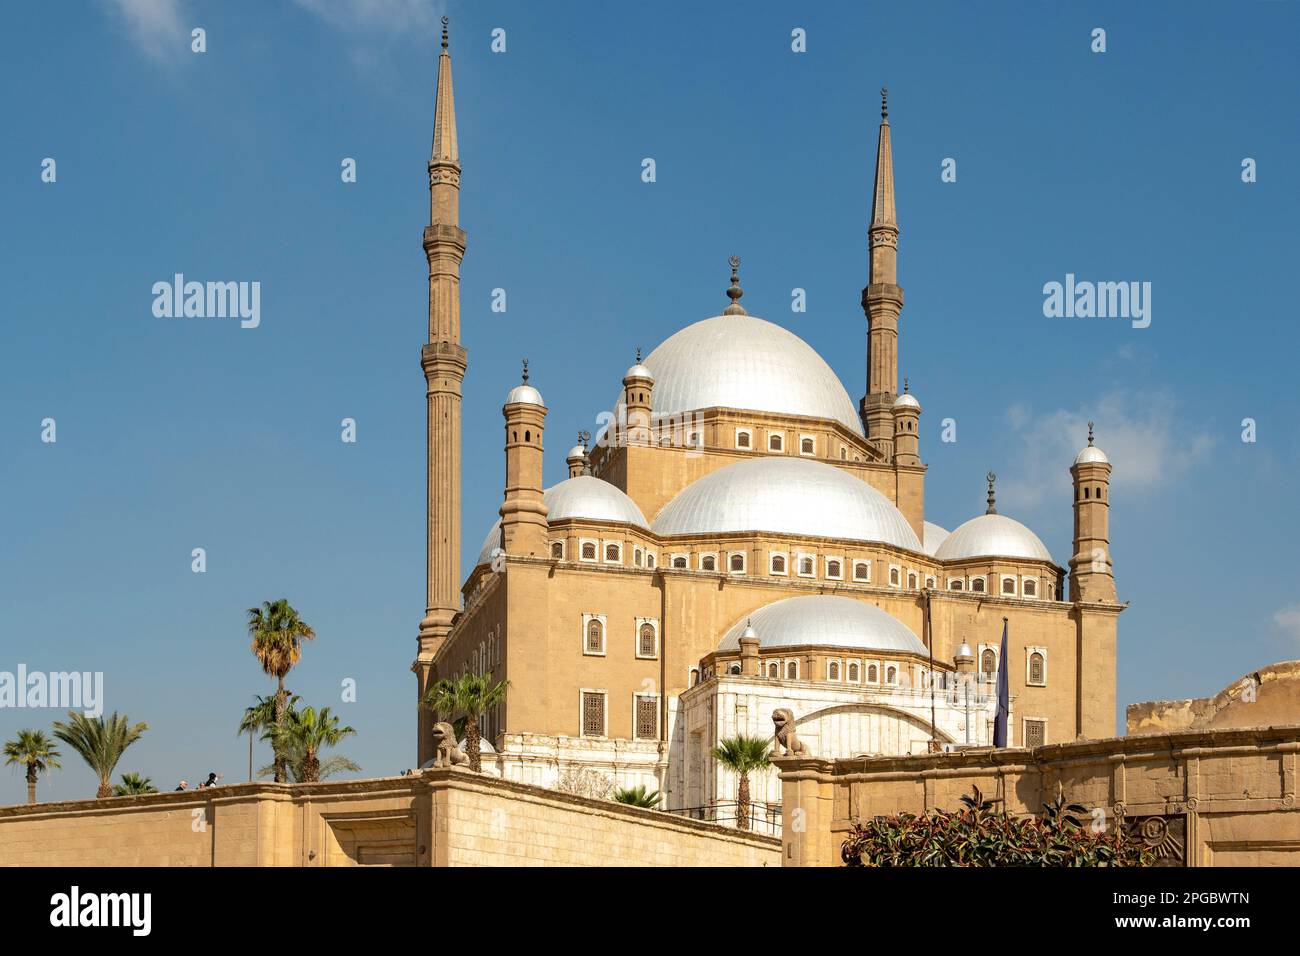 Mohamed Ali Mosque, Cairo, Egypt Stock Photo